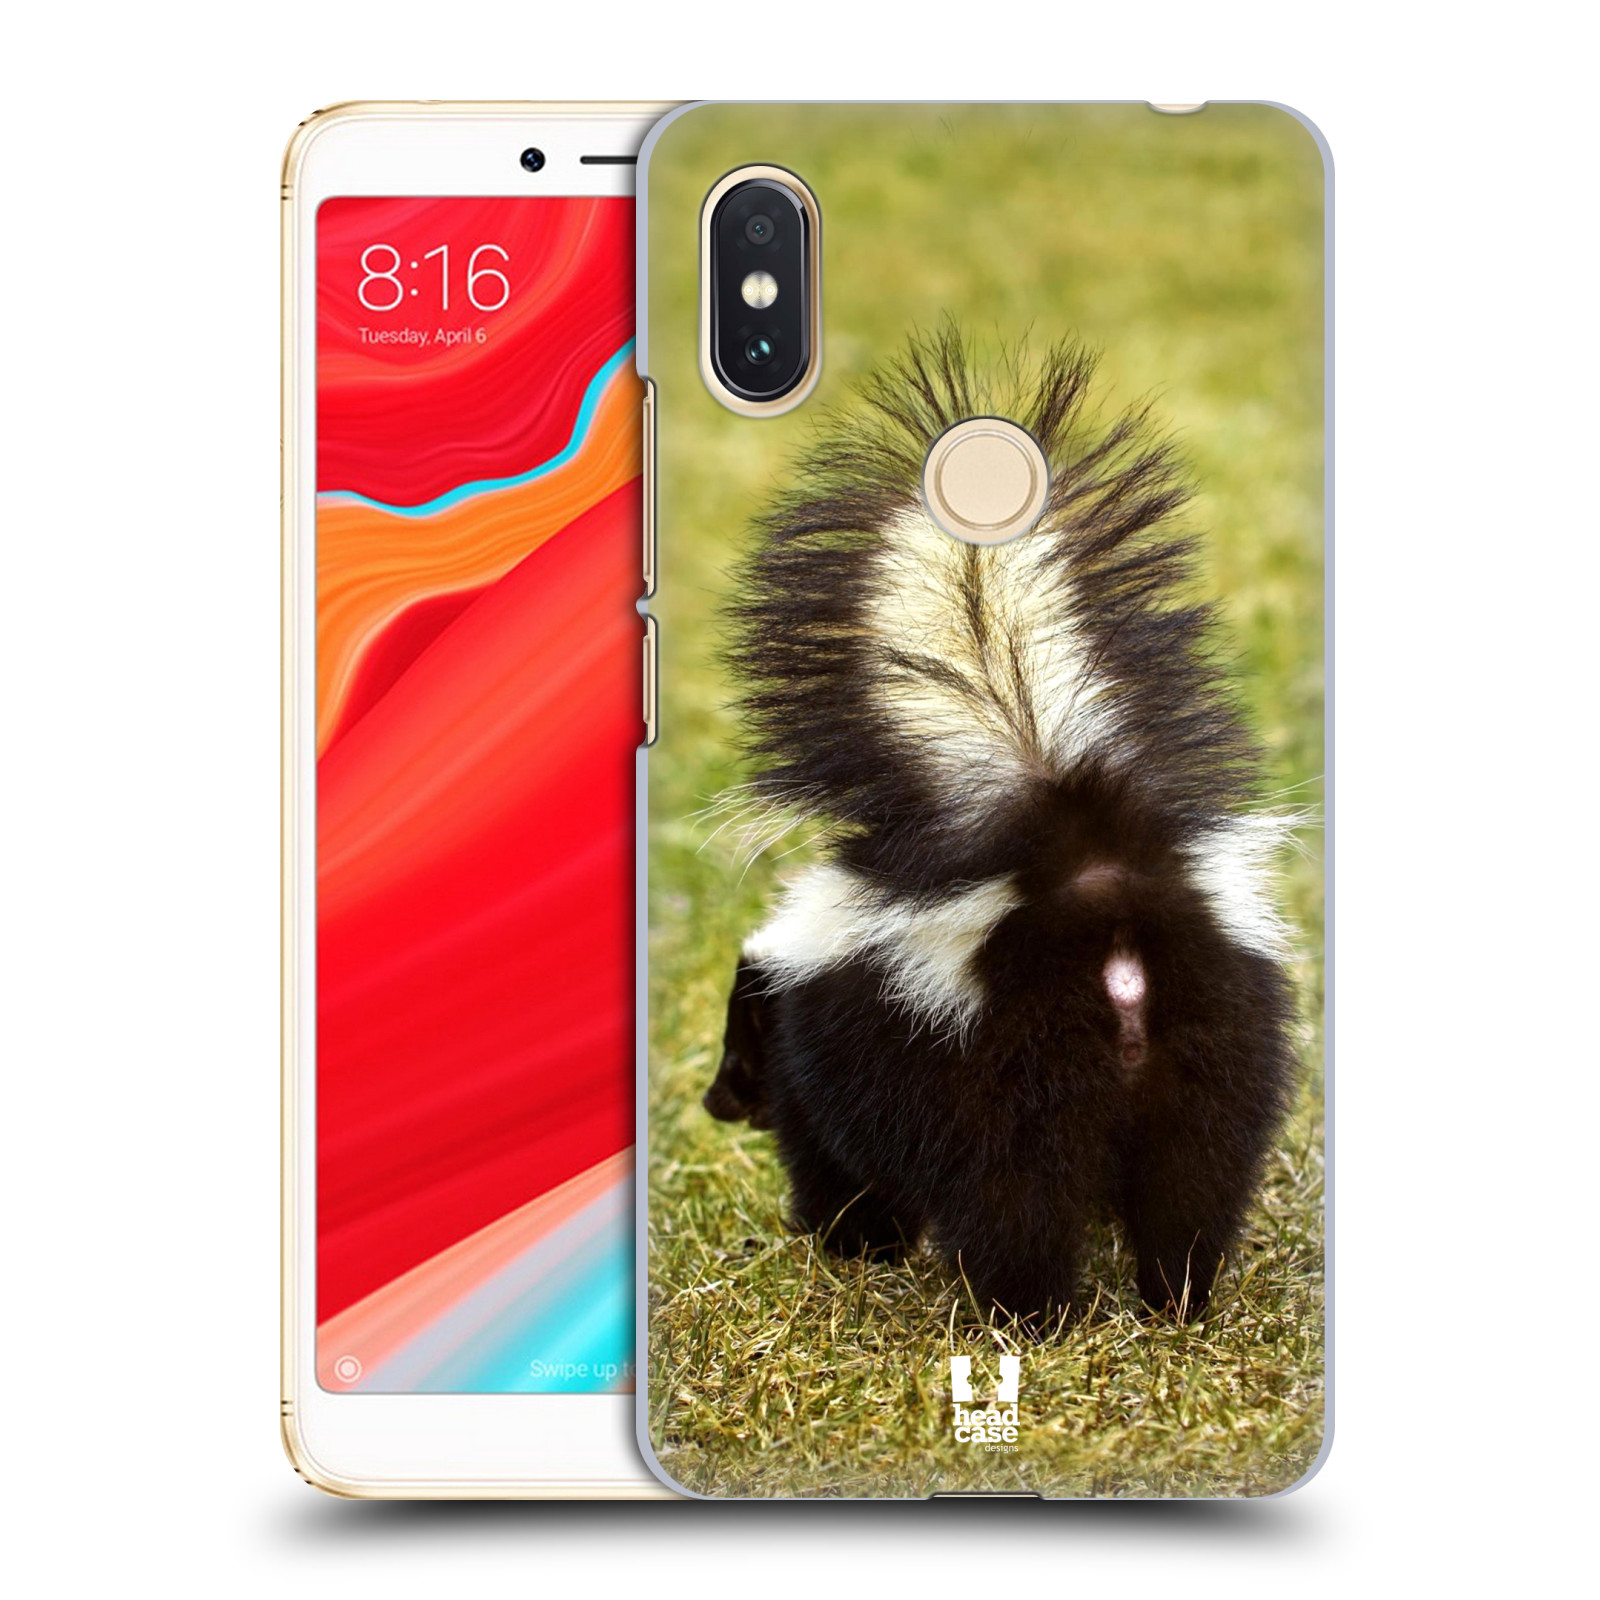 HEAD CASE plastový obal na mobil Xiaomi Redmi S2 vzor slavná zvířata foto skunk